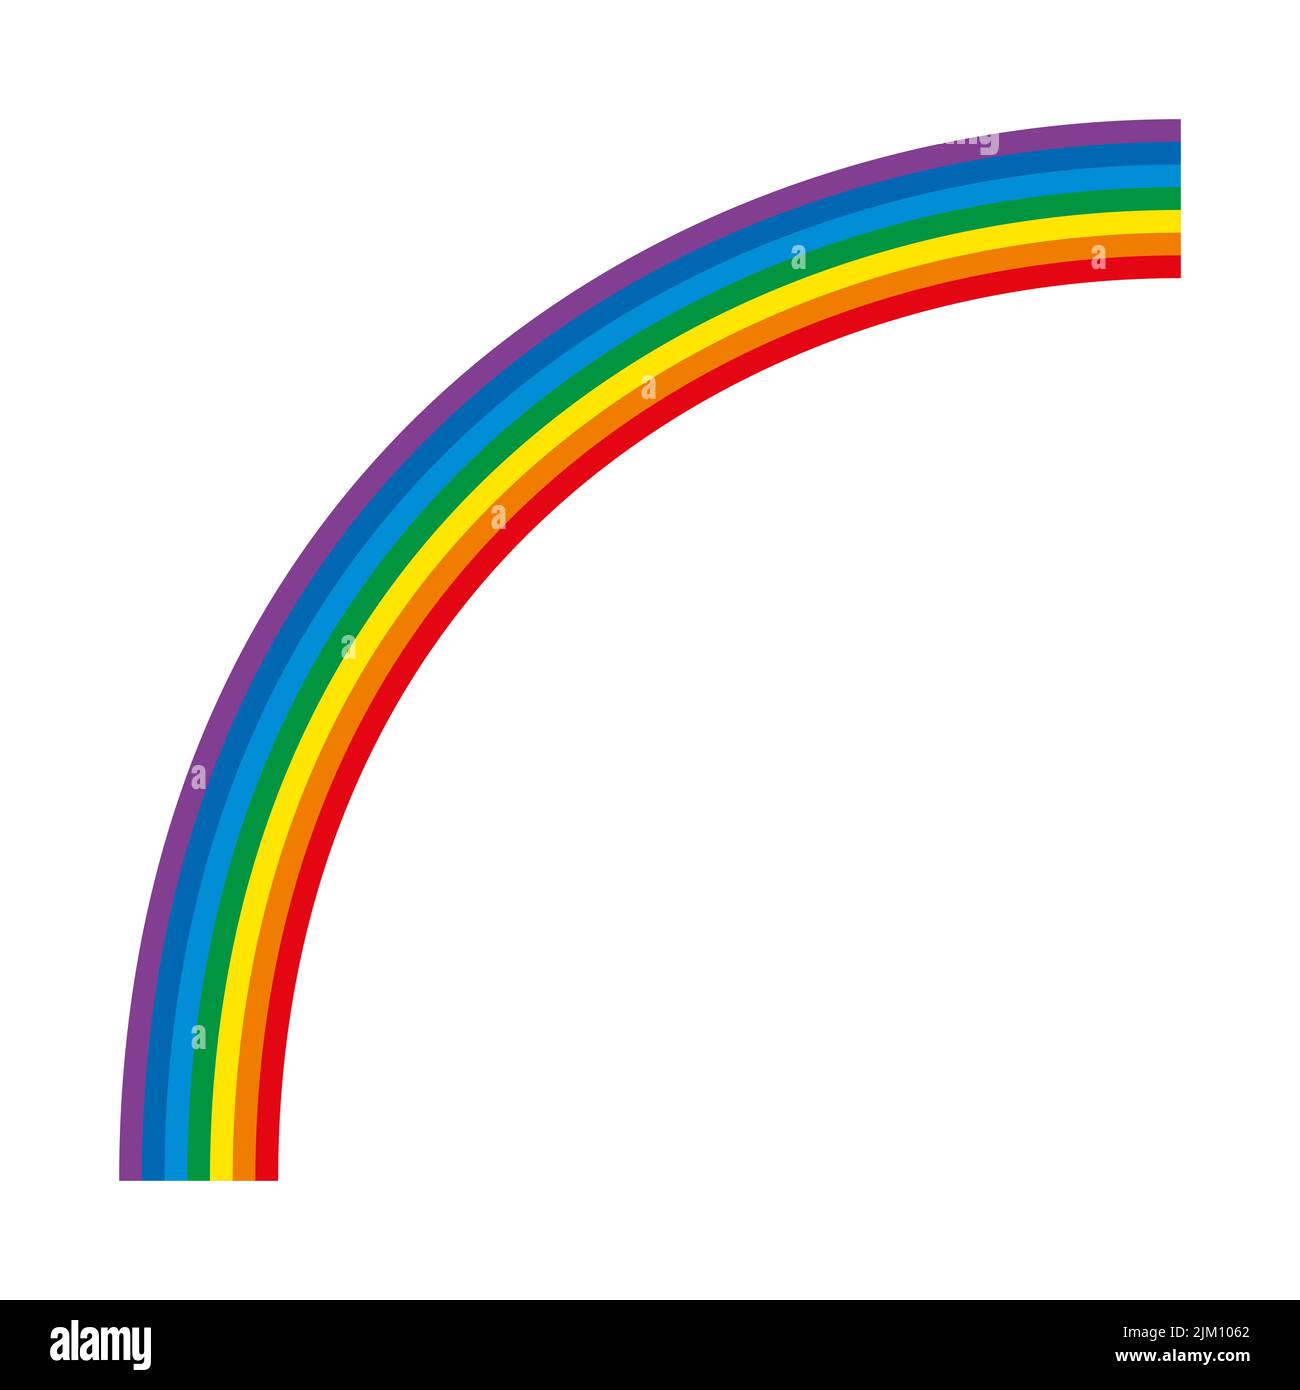 Rainbow, quarto di cerchio multicolore. Arco di 7 barre di colore piegate con lo spettro della luce visibile. Rosso, arancione, giallo, verde, ciano, blu, viola. Foto Stock